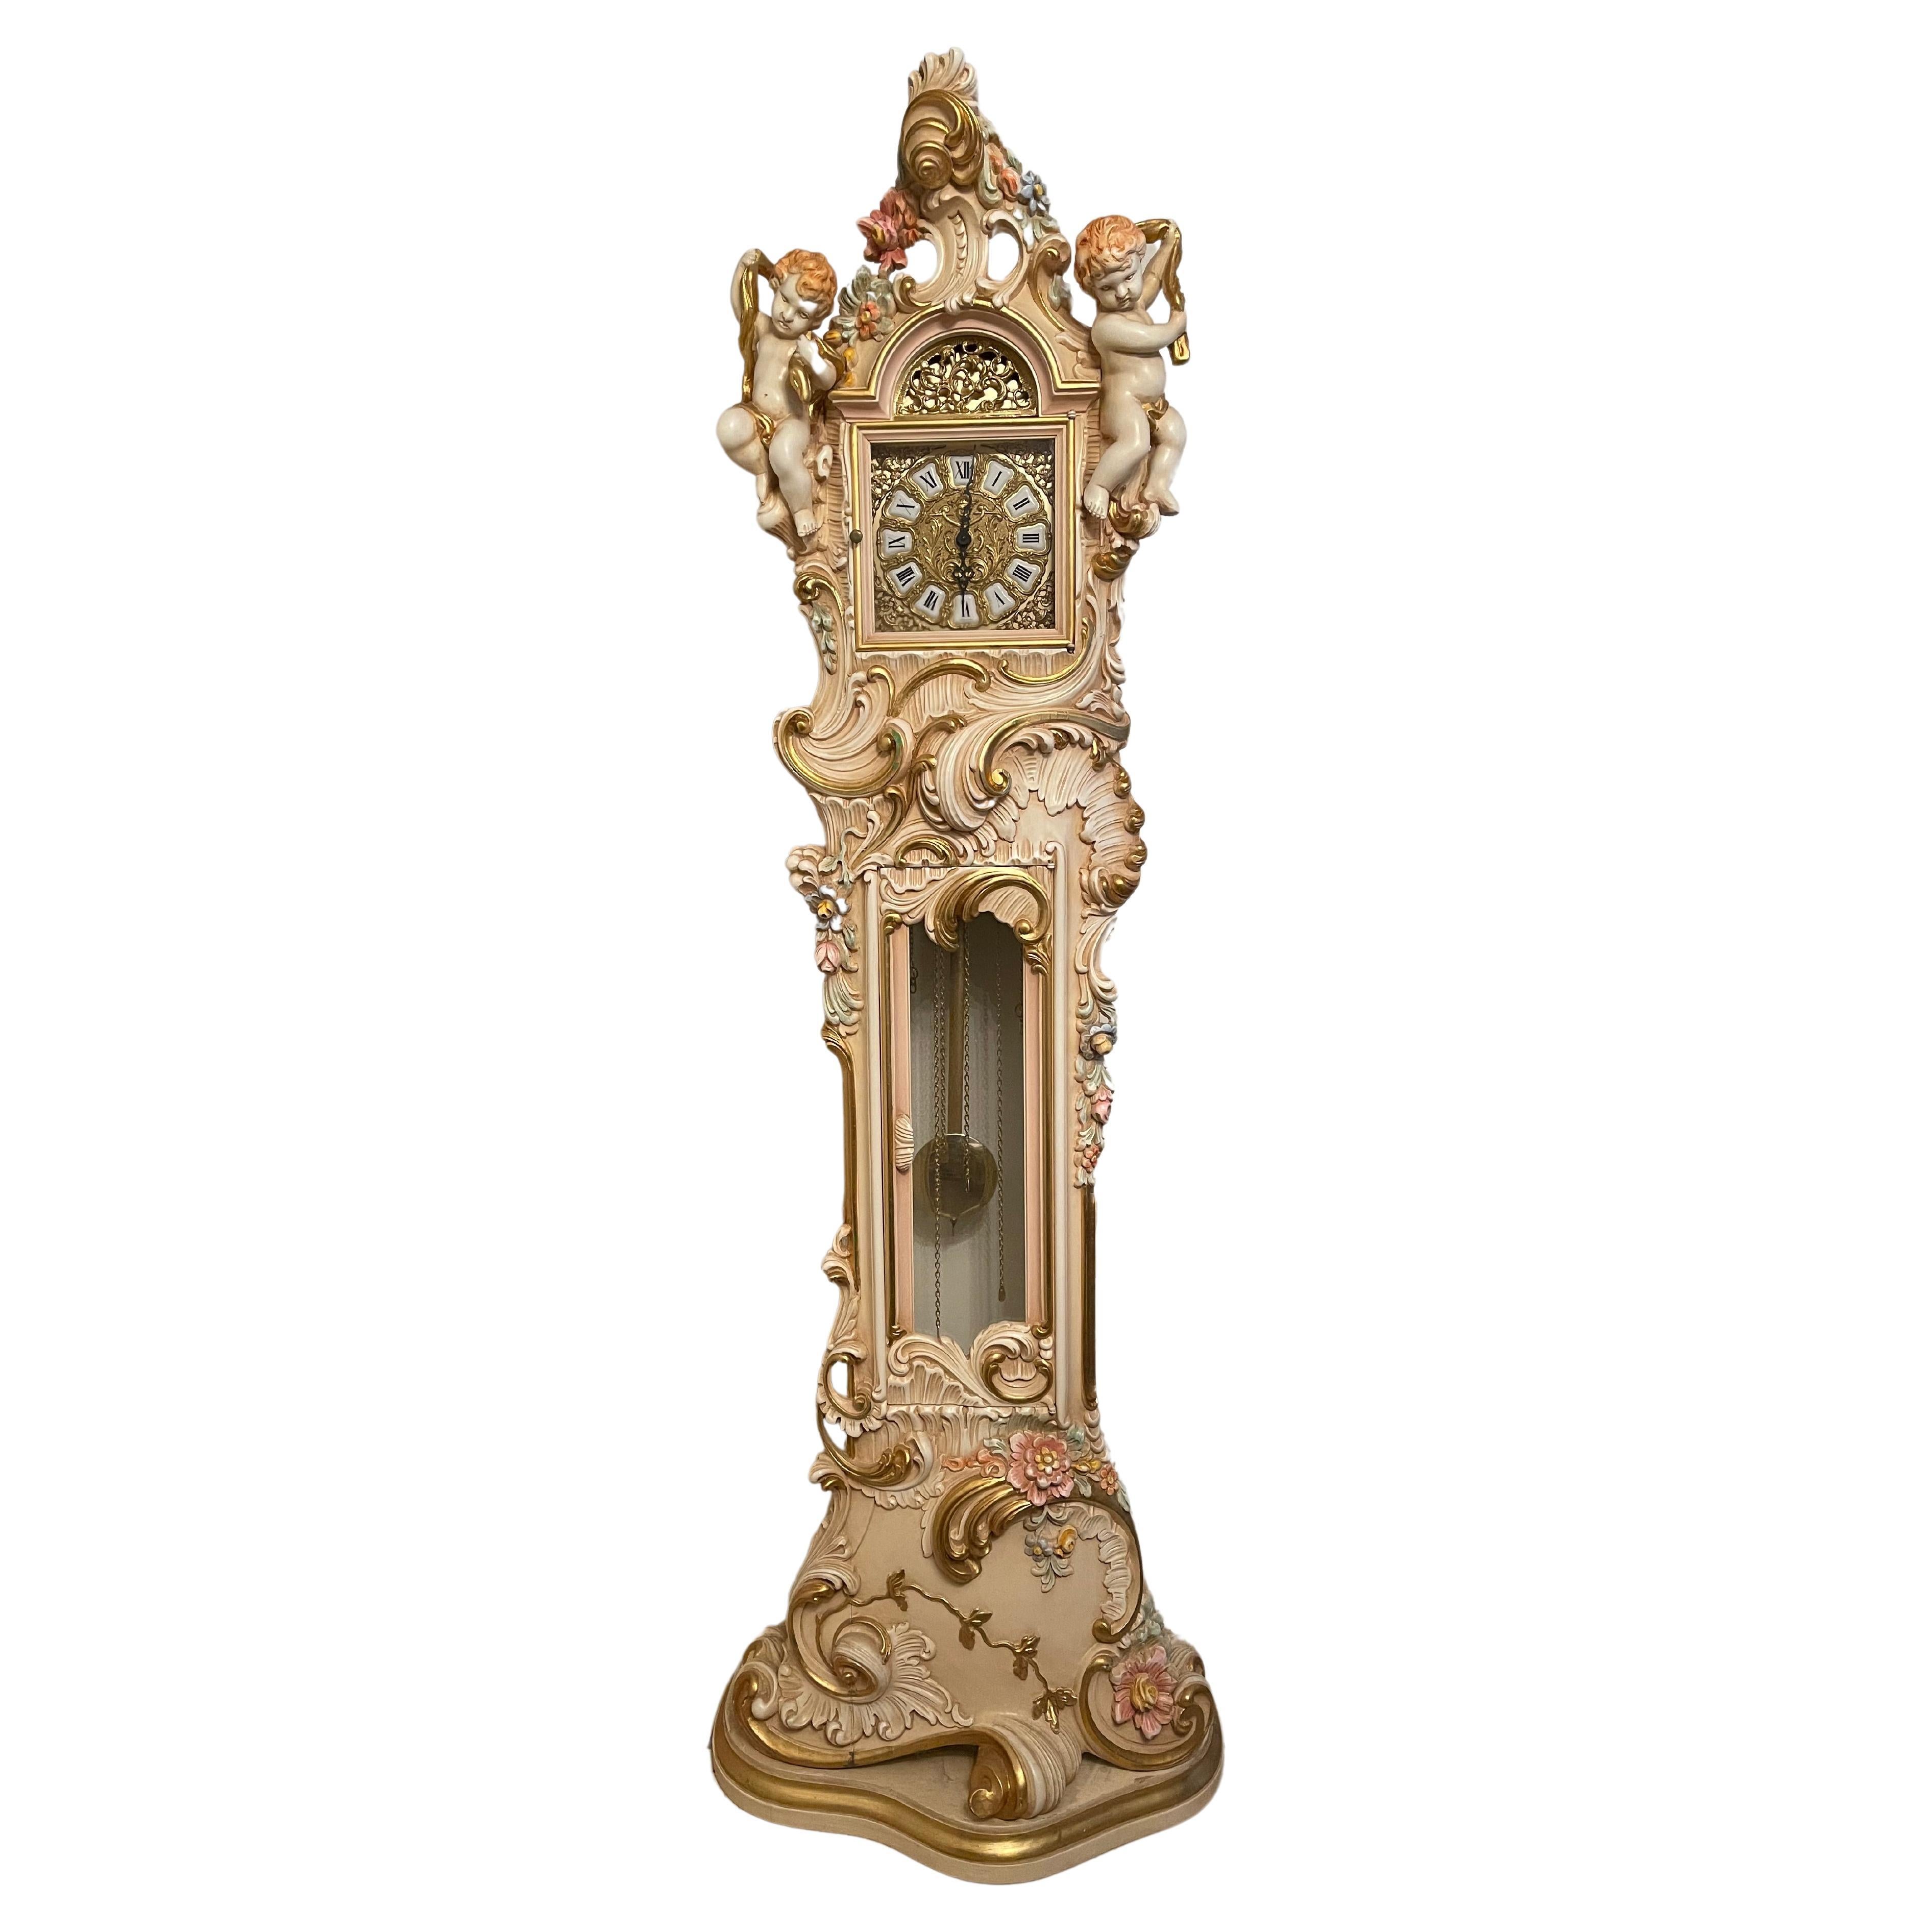  Orologio a Pendolo in Legno Laccato Style barocco veneziano 700 For Sale